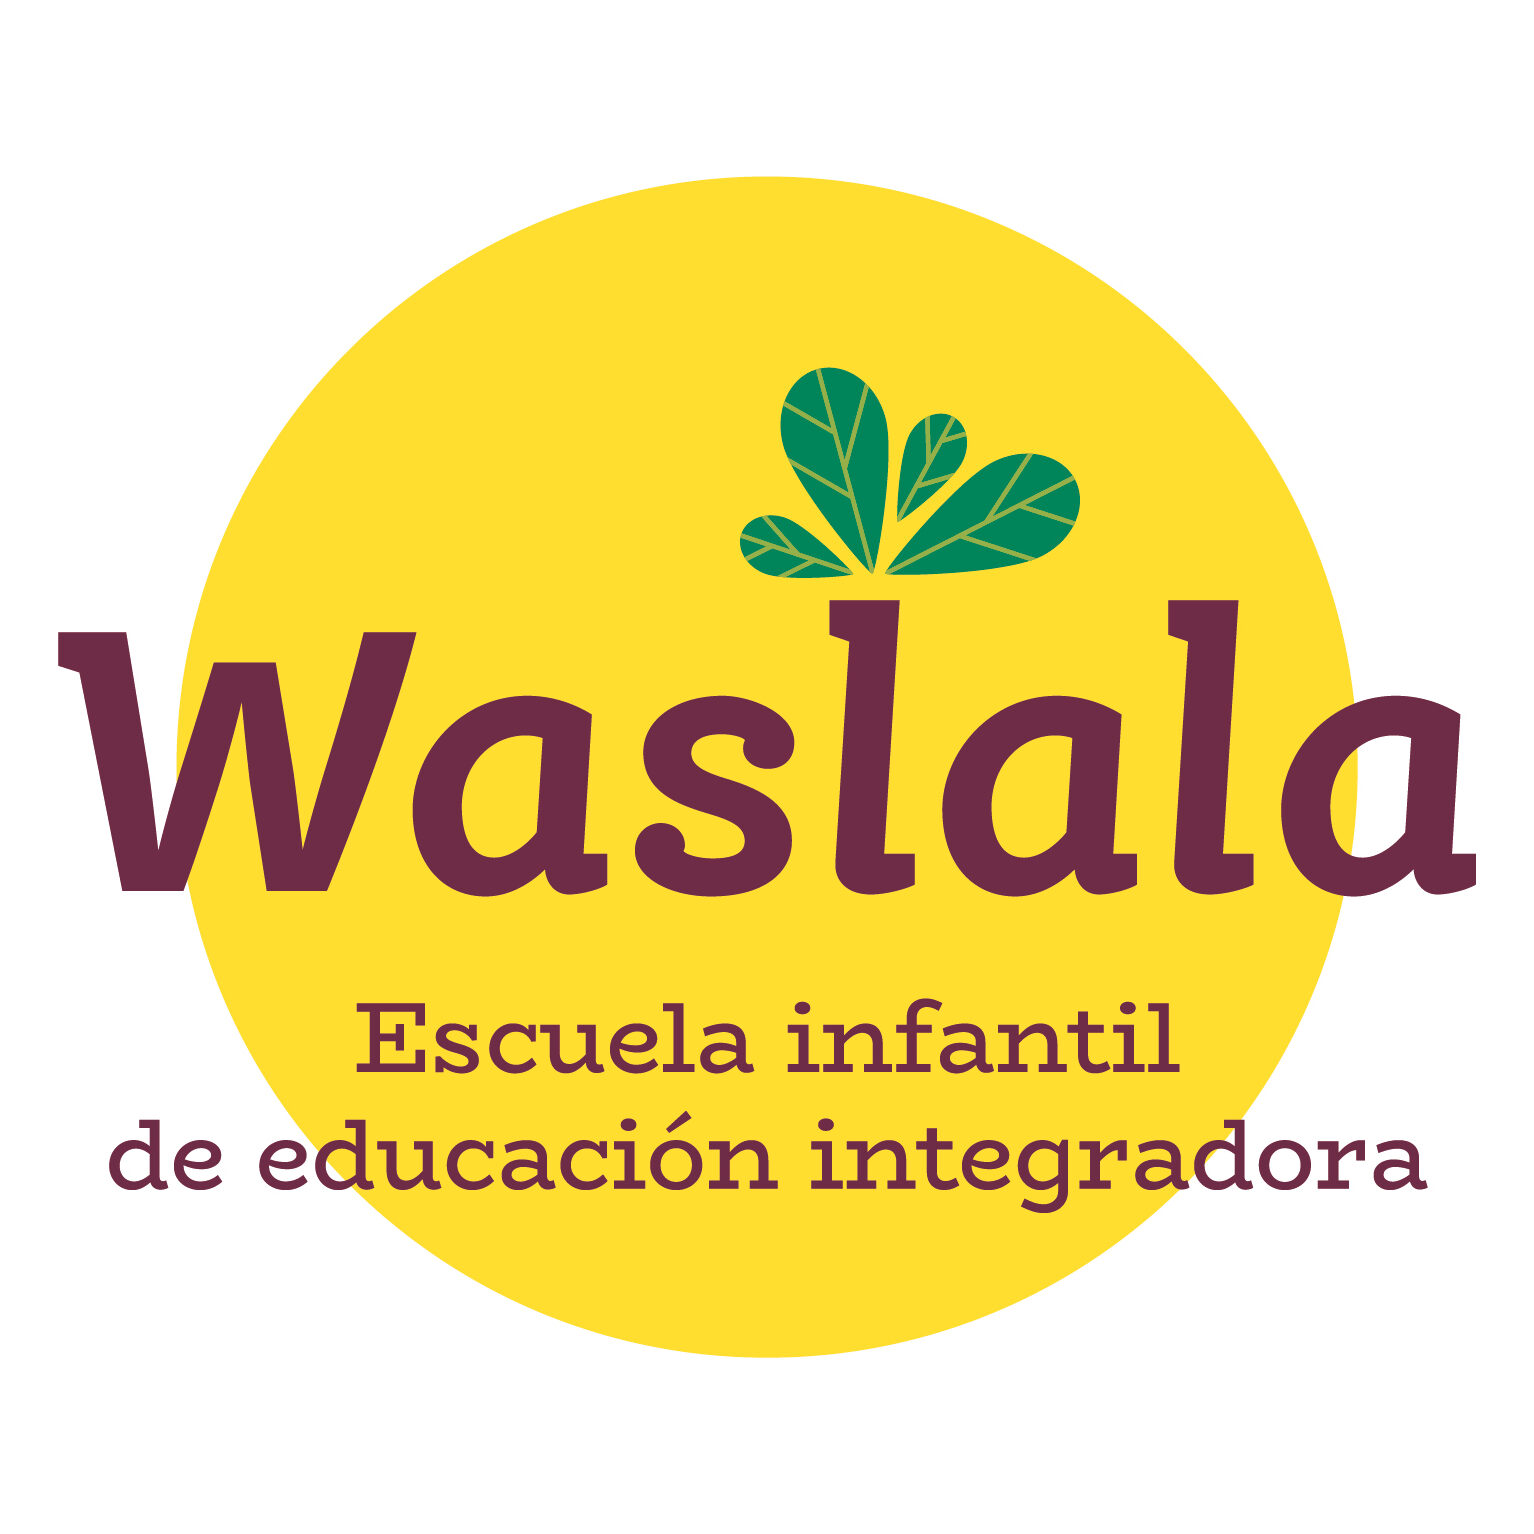 WASLALA ES UNA ESCUELA INFANTIL  DE EDUCACION ALTERNATIVA EN VADORREY, ZARAGOZA.